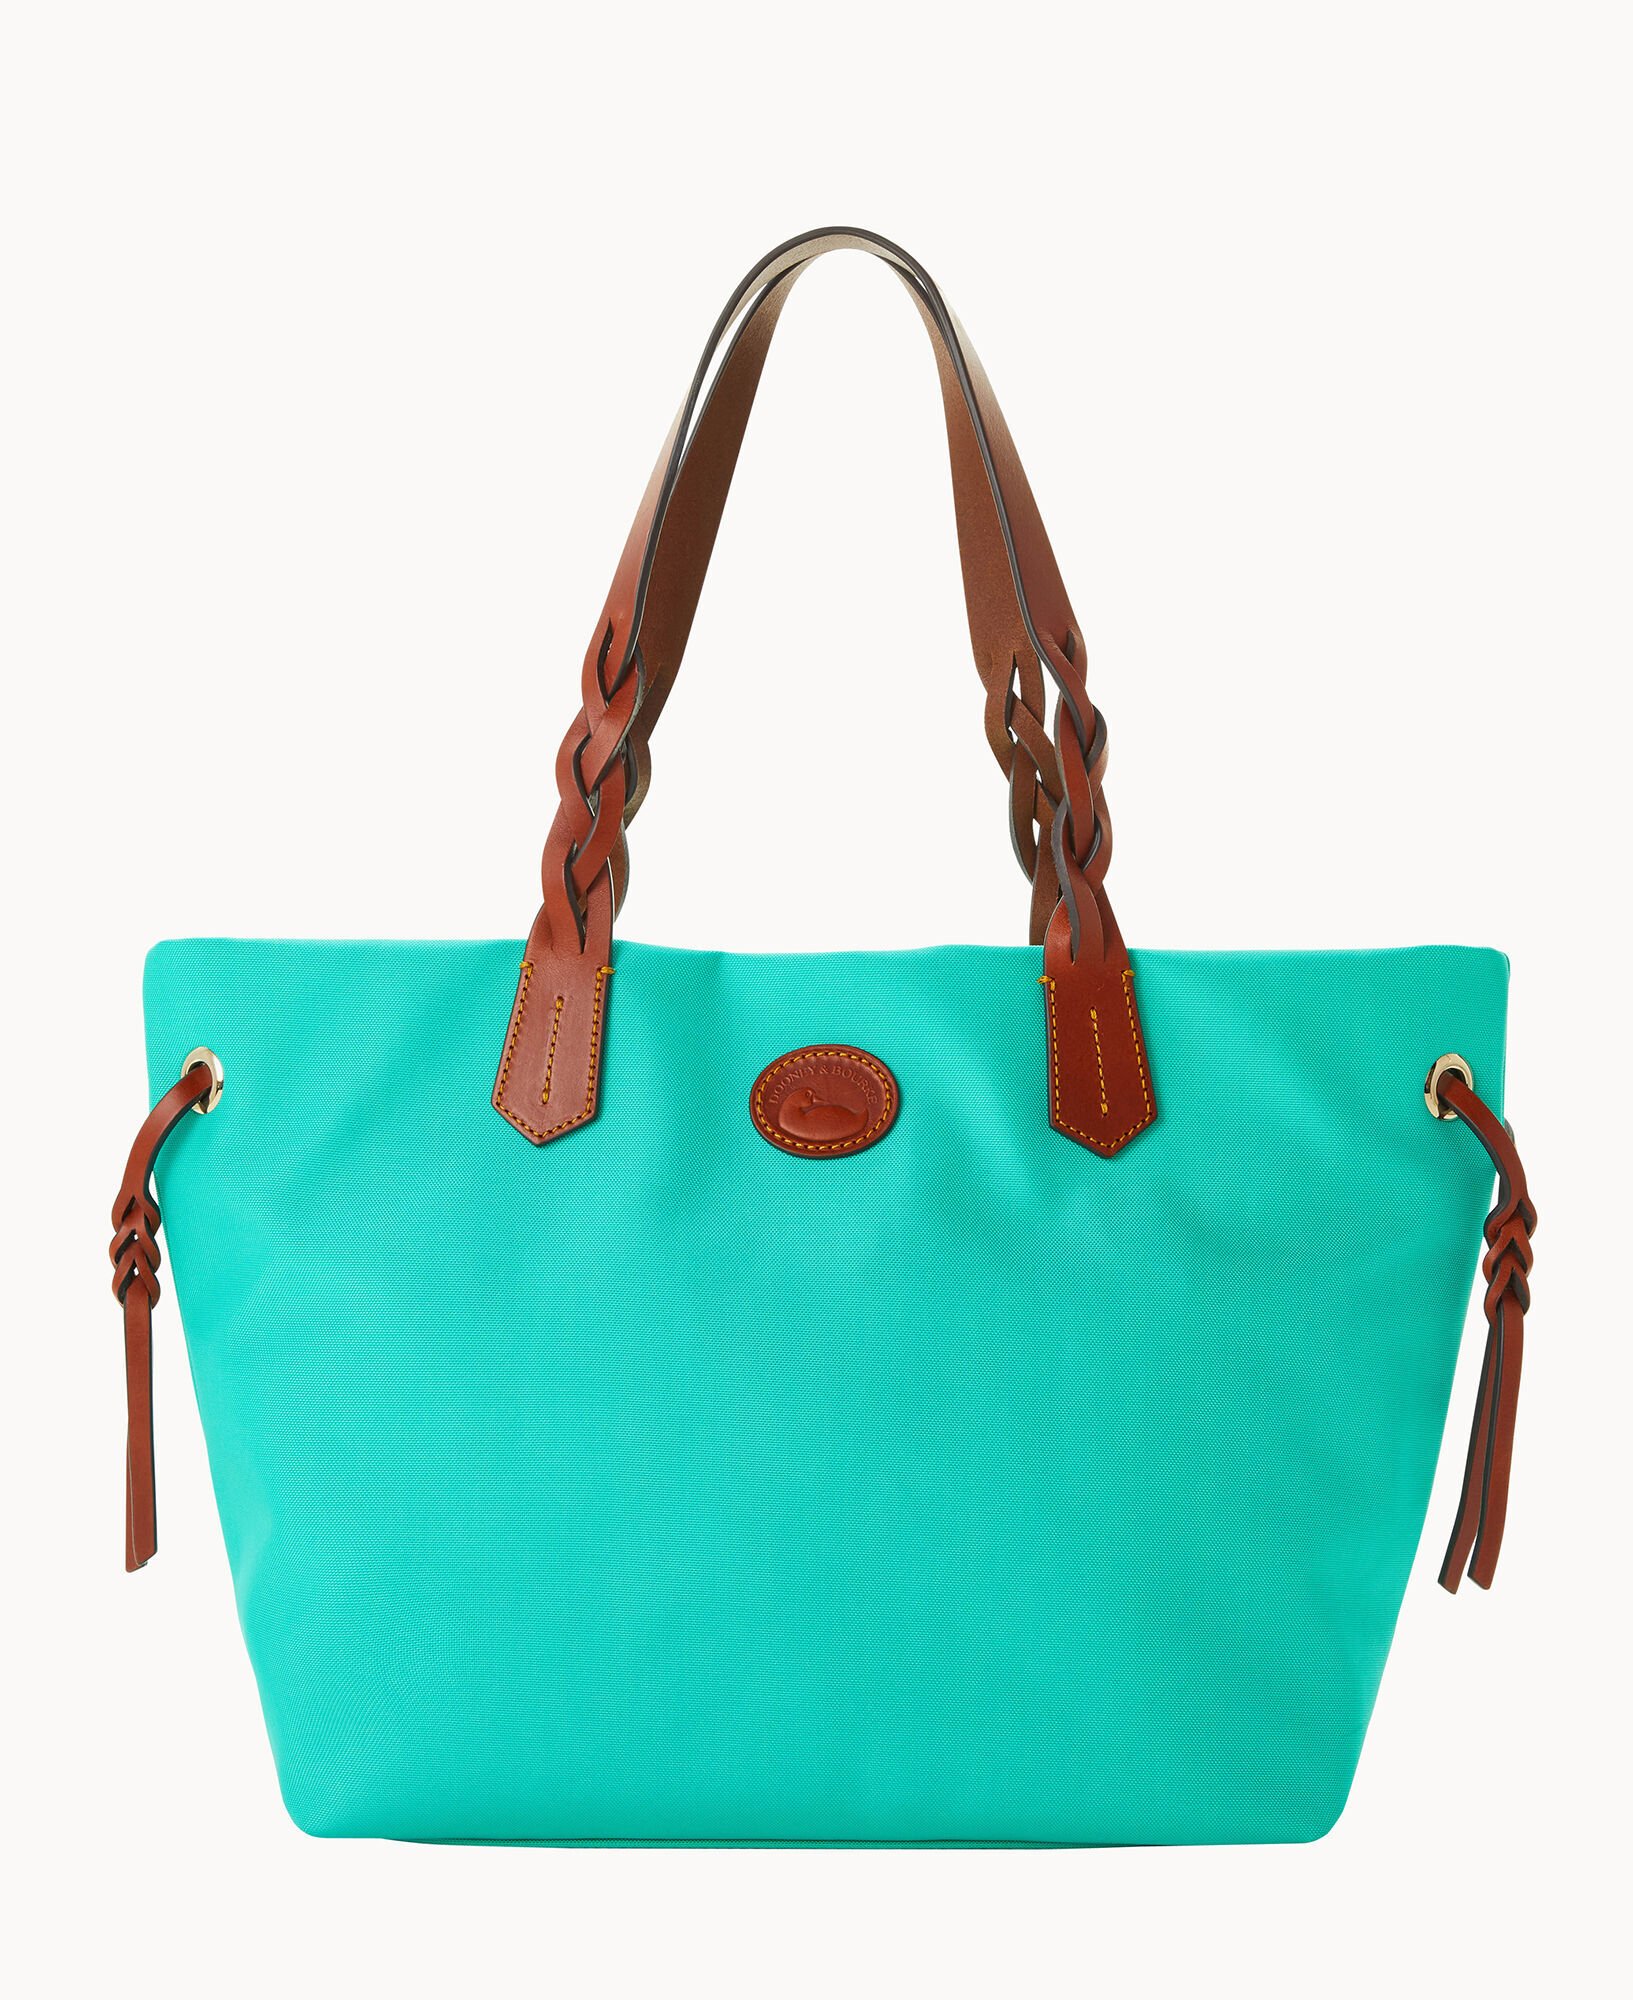 discount 73% Green Single Misako Shopper WOMEN FASHION Bags Shopper Casual 